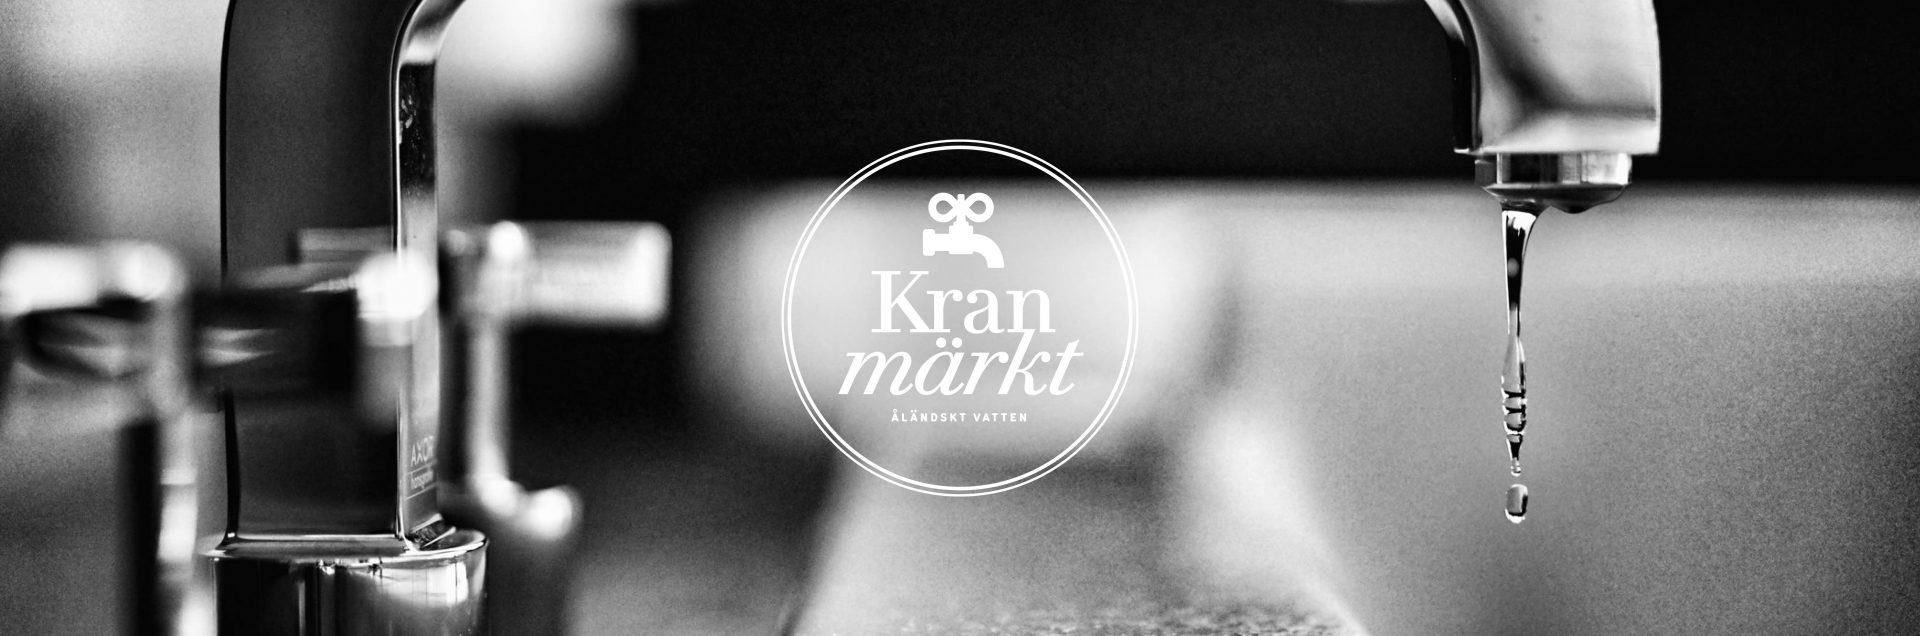 kranmarkt-slider3